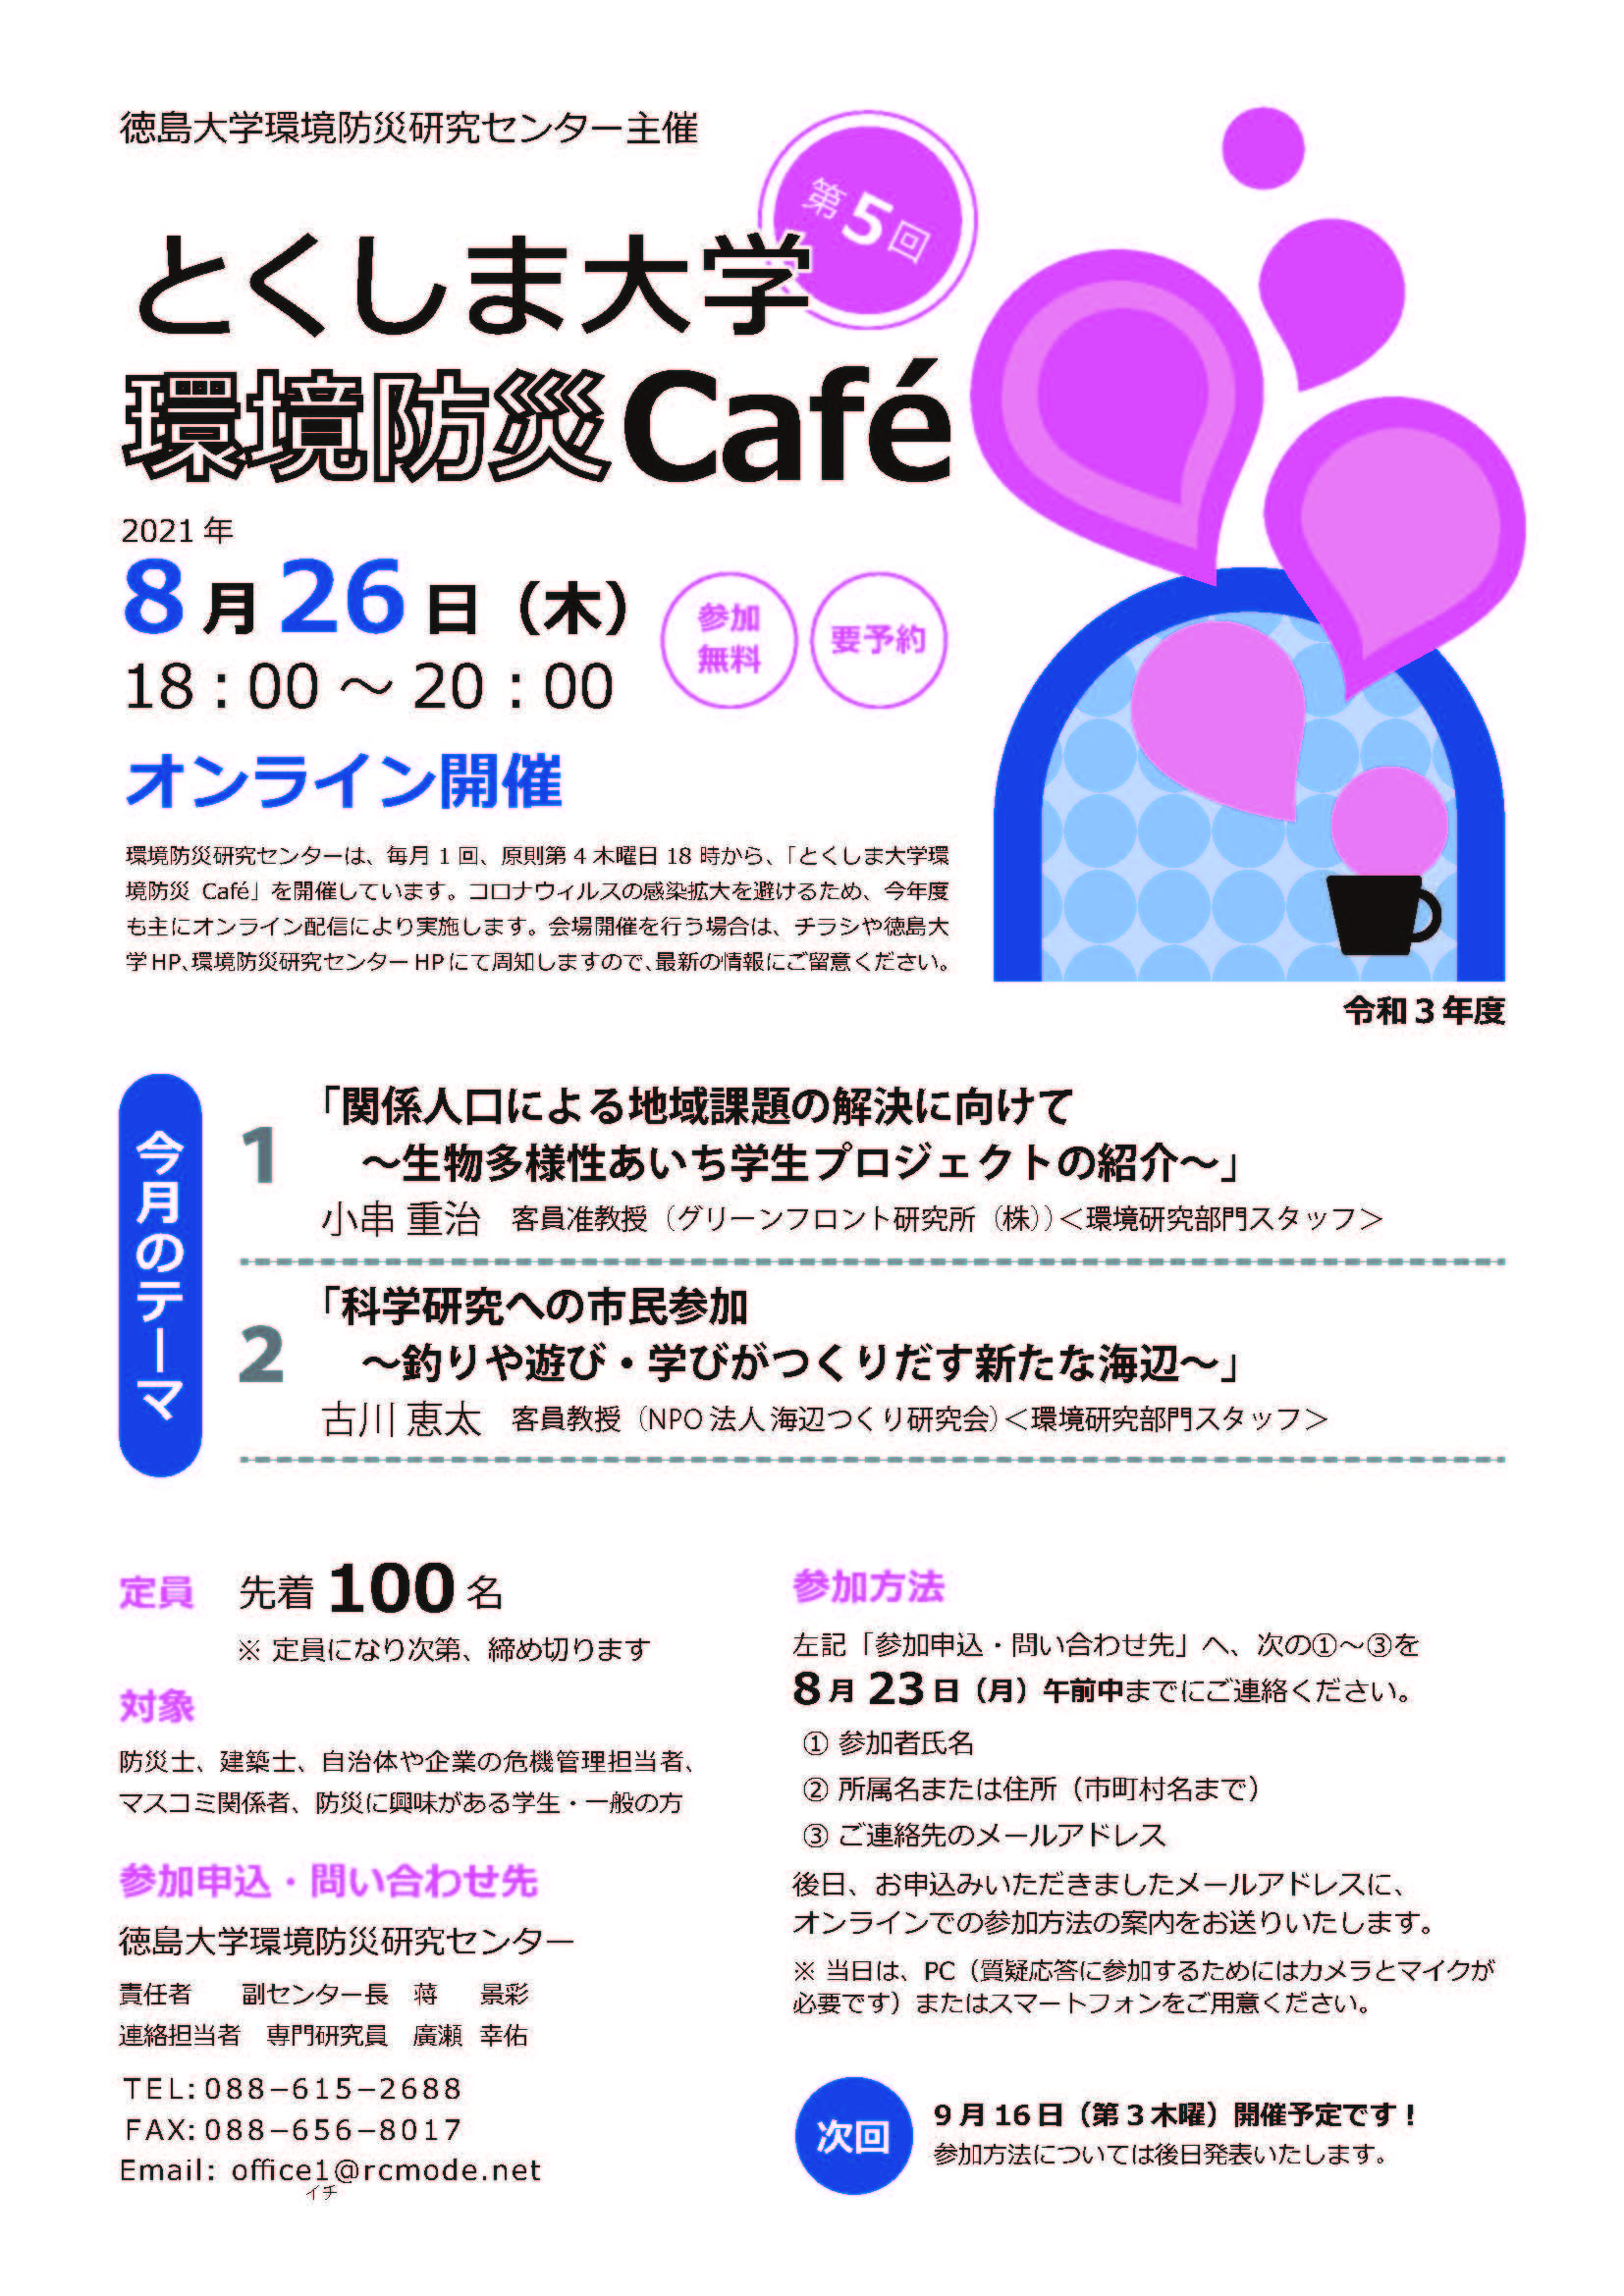 第5回徳島大学環境防災cafe (JPG 1.12MB)